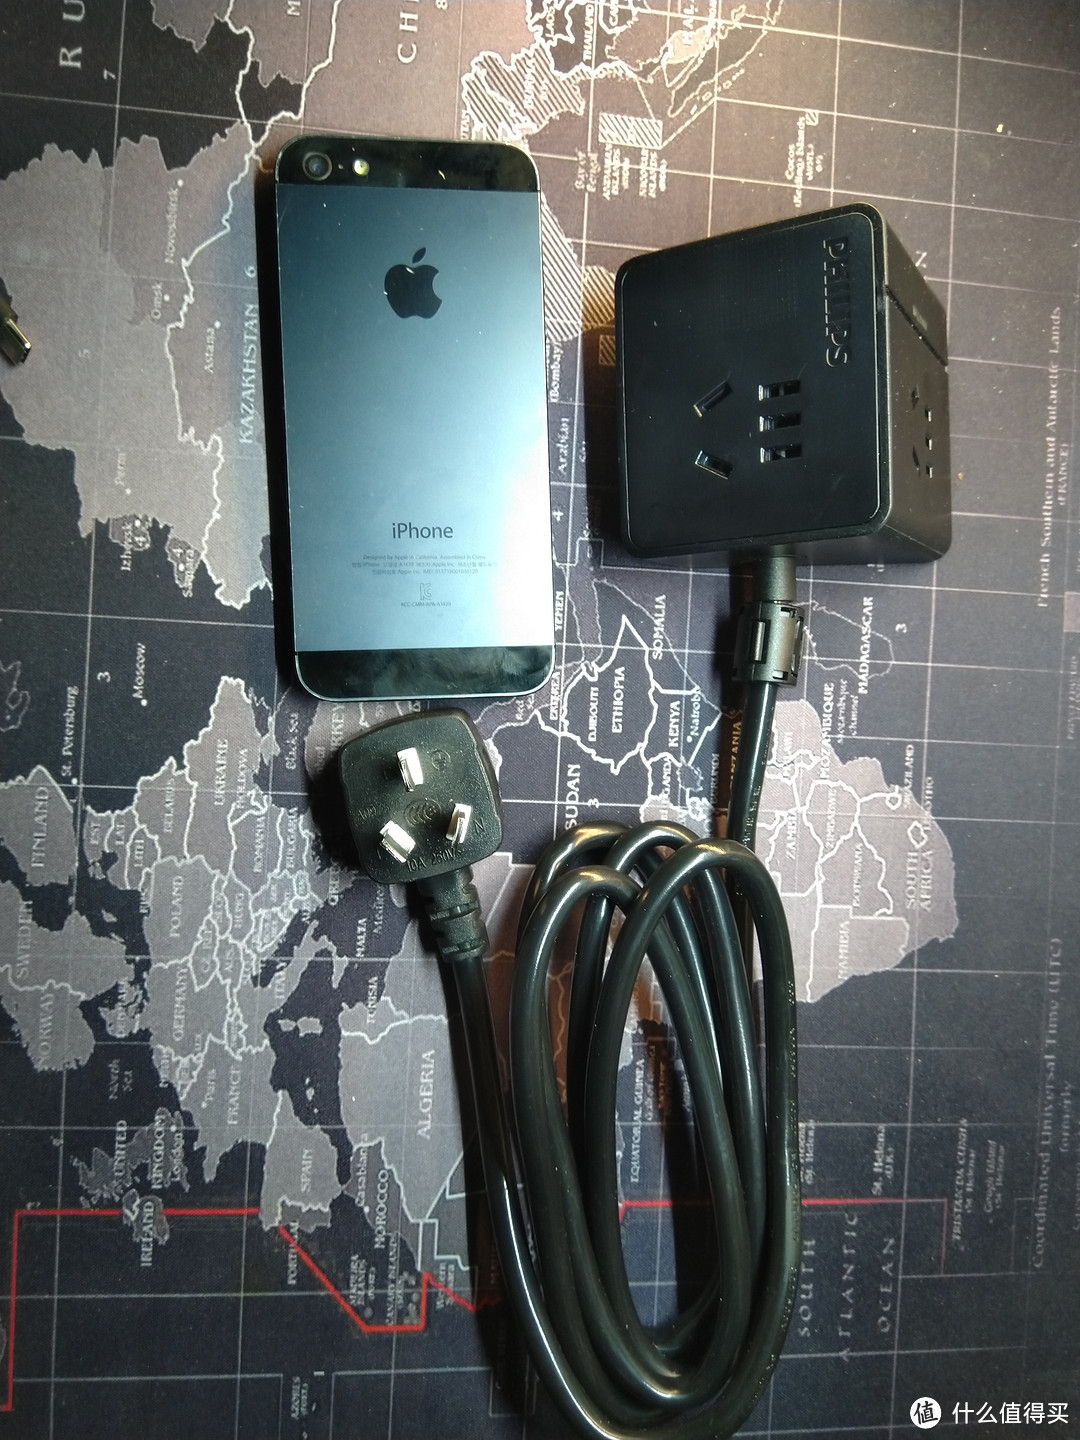 出门不再抢插座，旅行充电自负责-飞利浦便携迷你USB插座测评